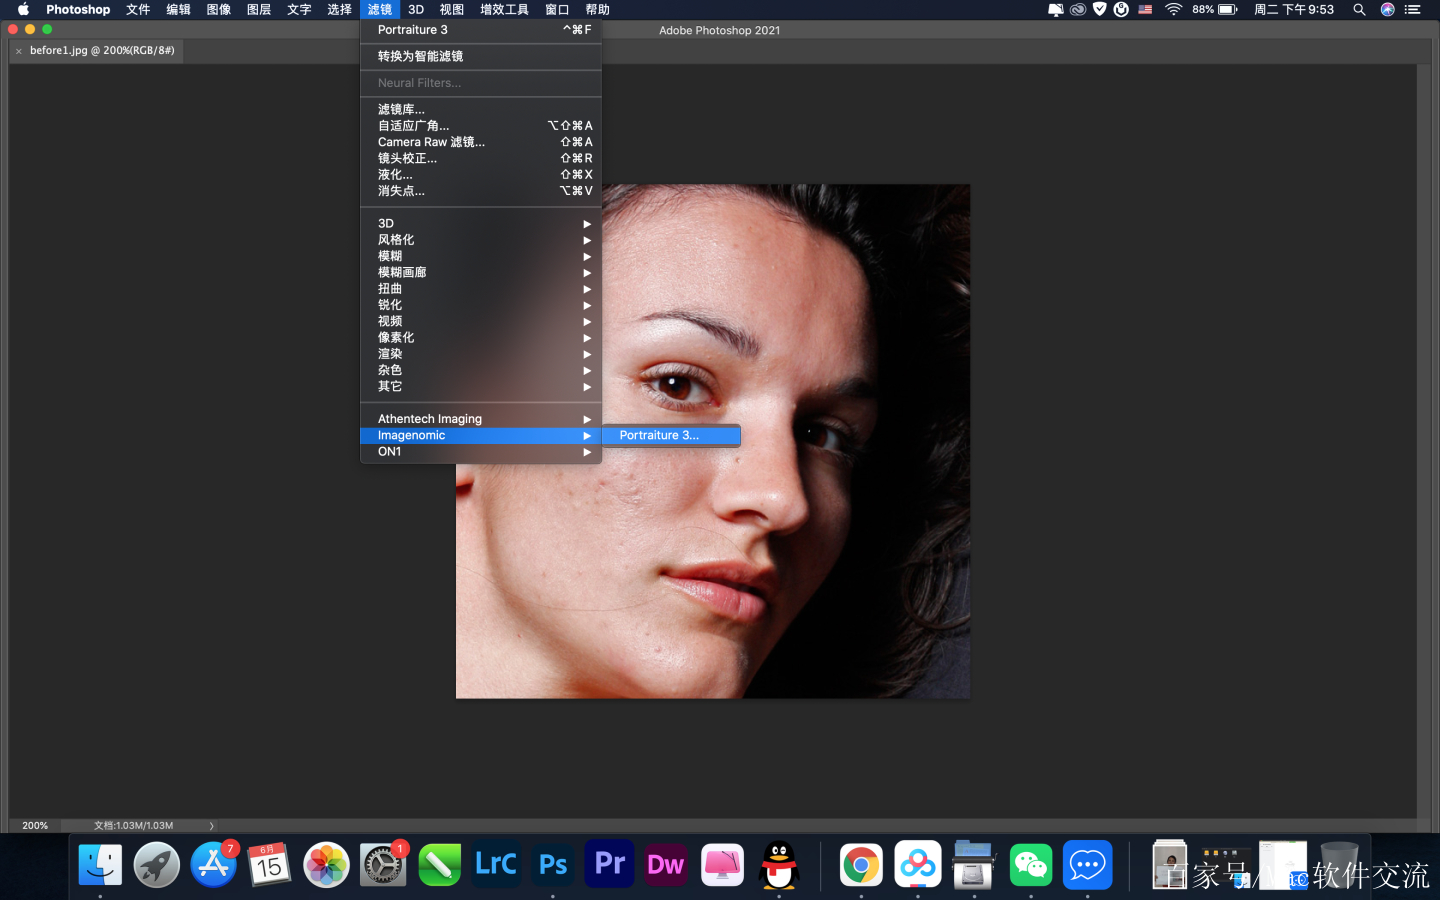 Adobe Photoshop 2021 M1 芯片版 v22.4.2 中文免激活版下载 PS图像处理软件